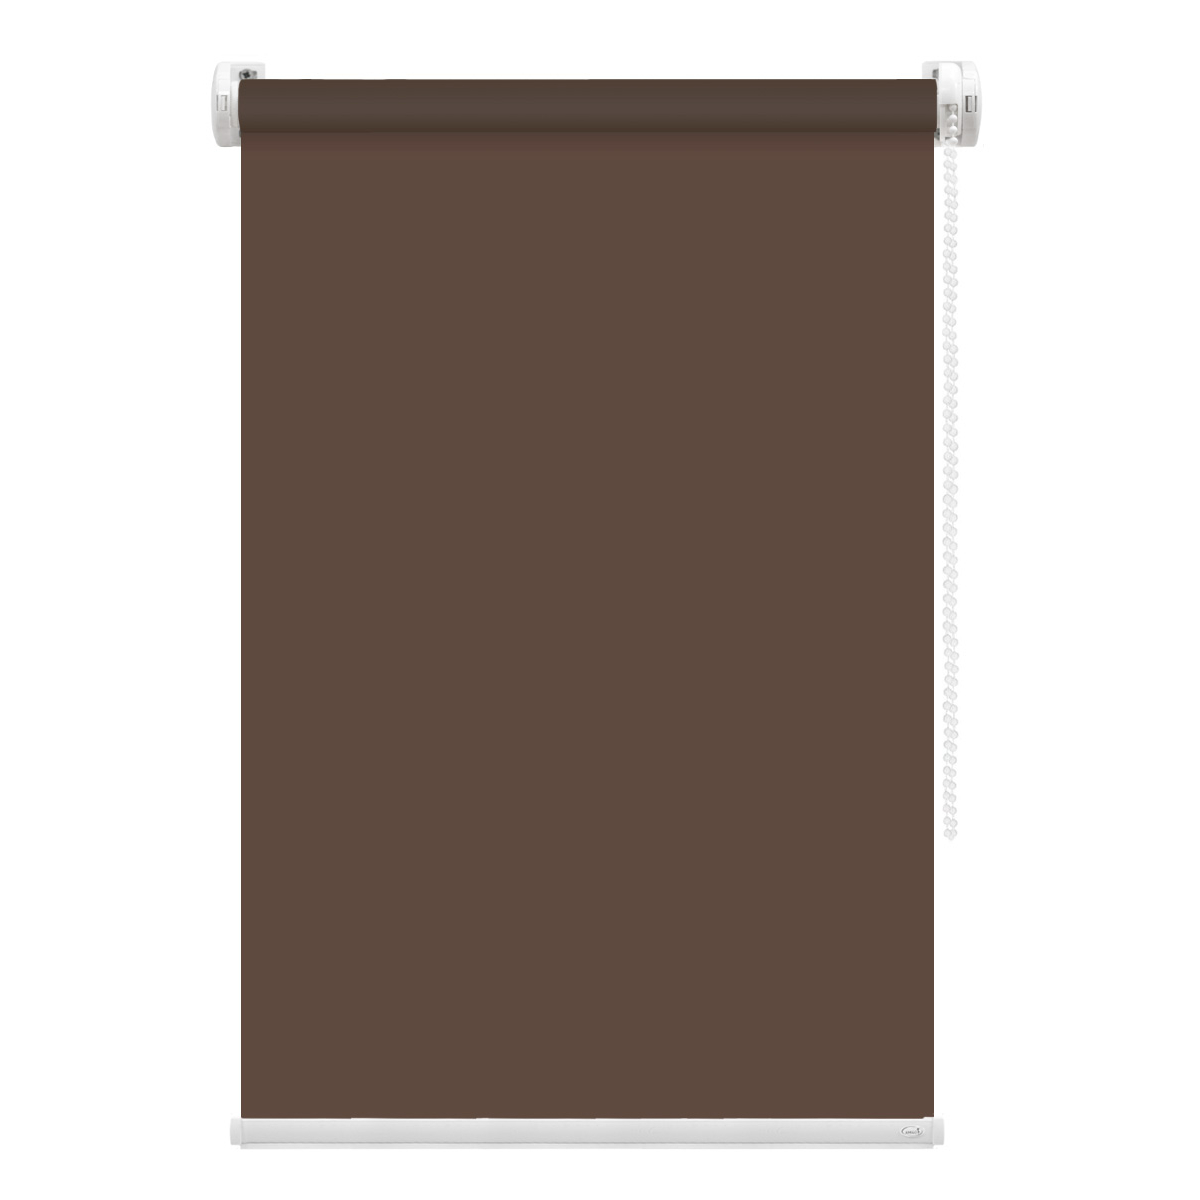 Рулонная штора FixLine Amigo Basic коричневая 65х160 см